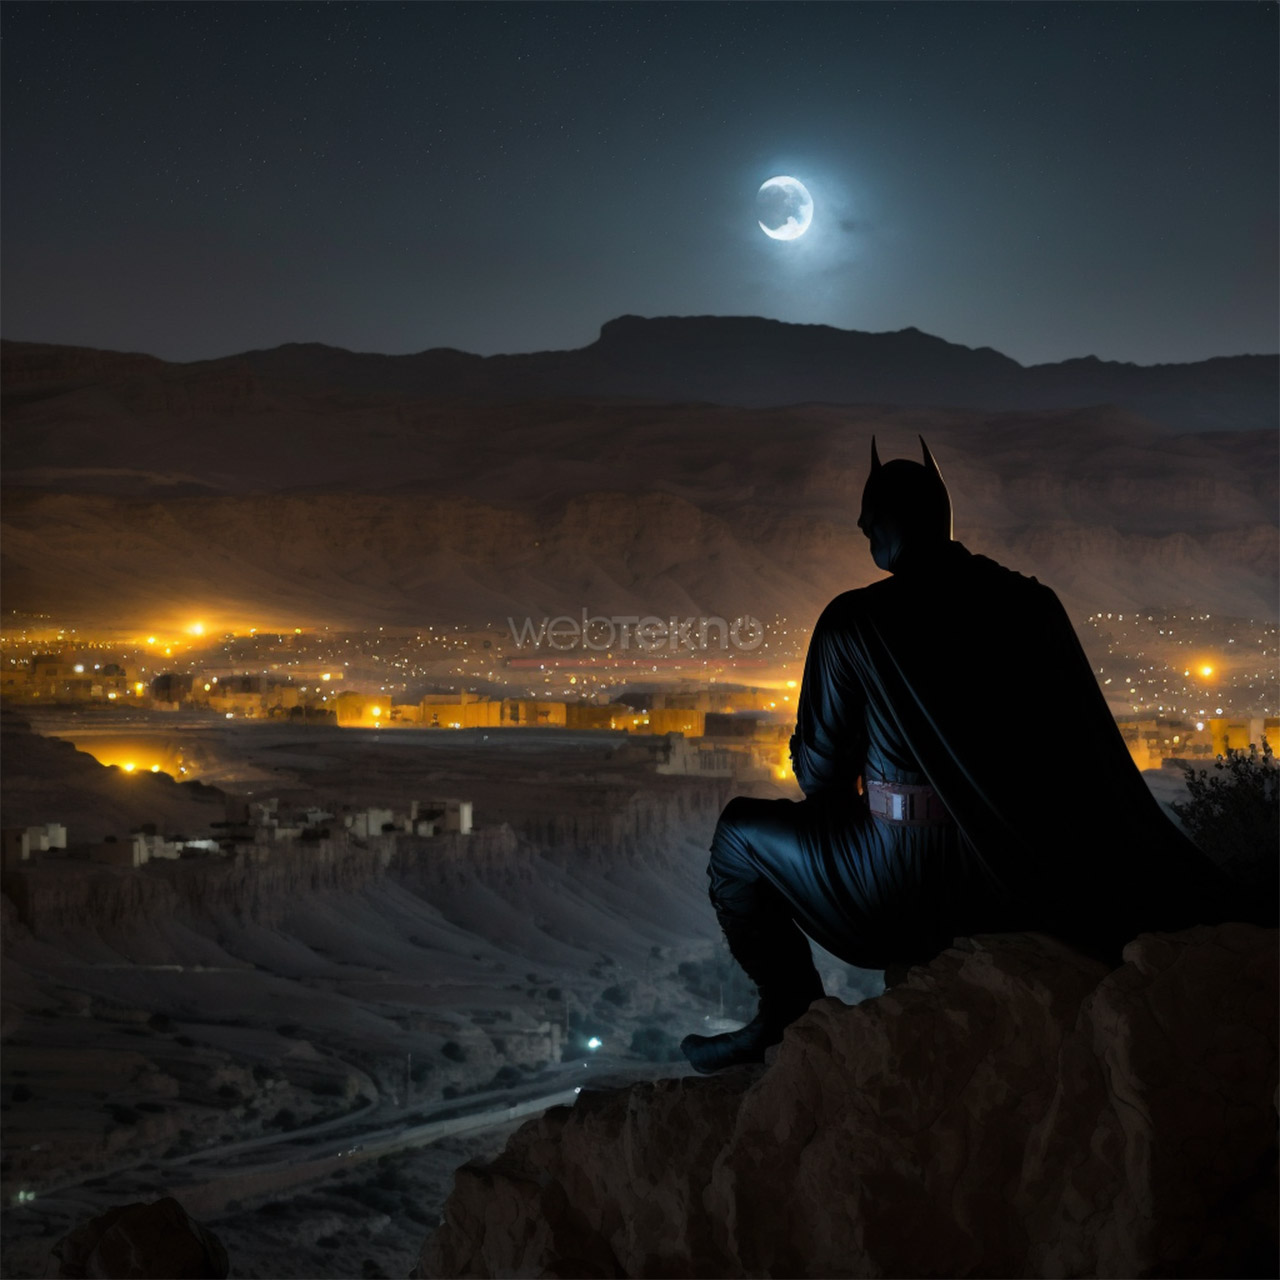 Batman watching Batman